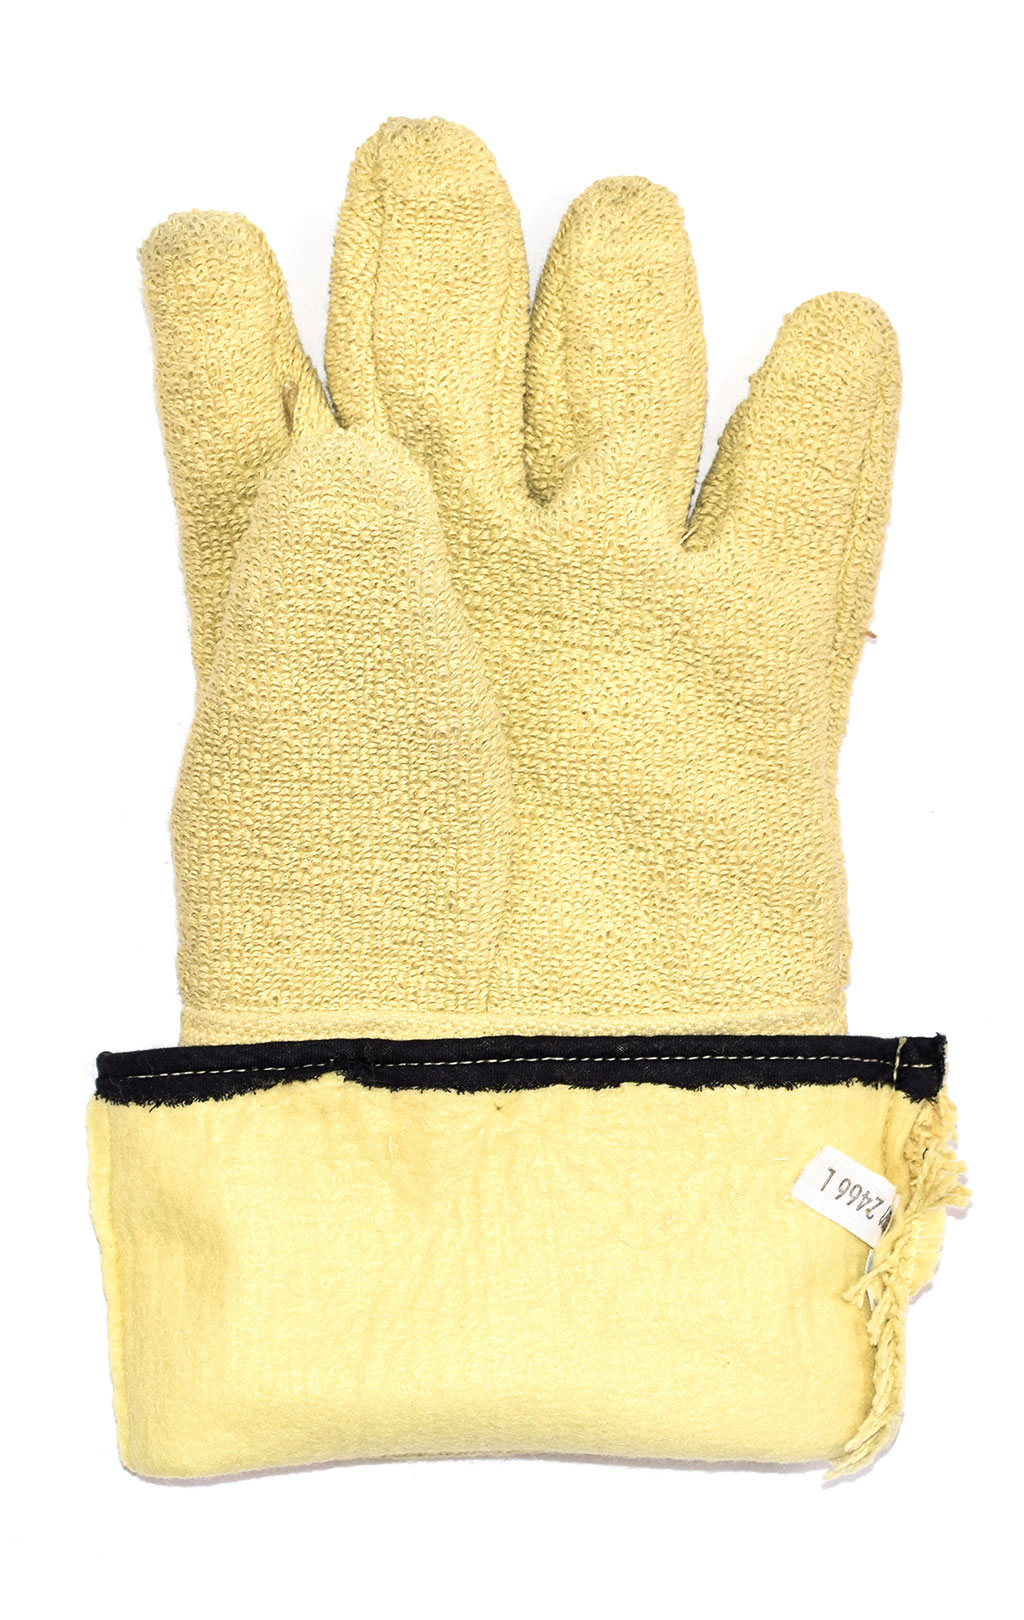 Перчатки Cevlar Cevlar (усиленные) yellow Германия